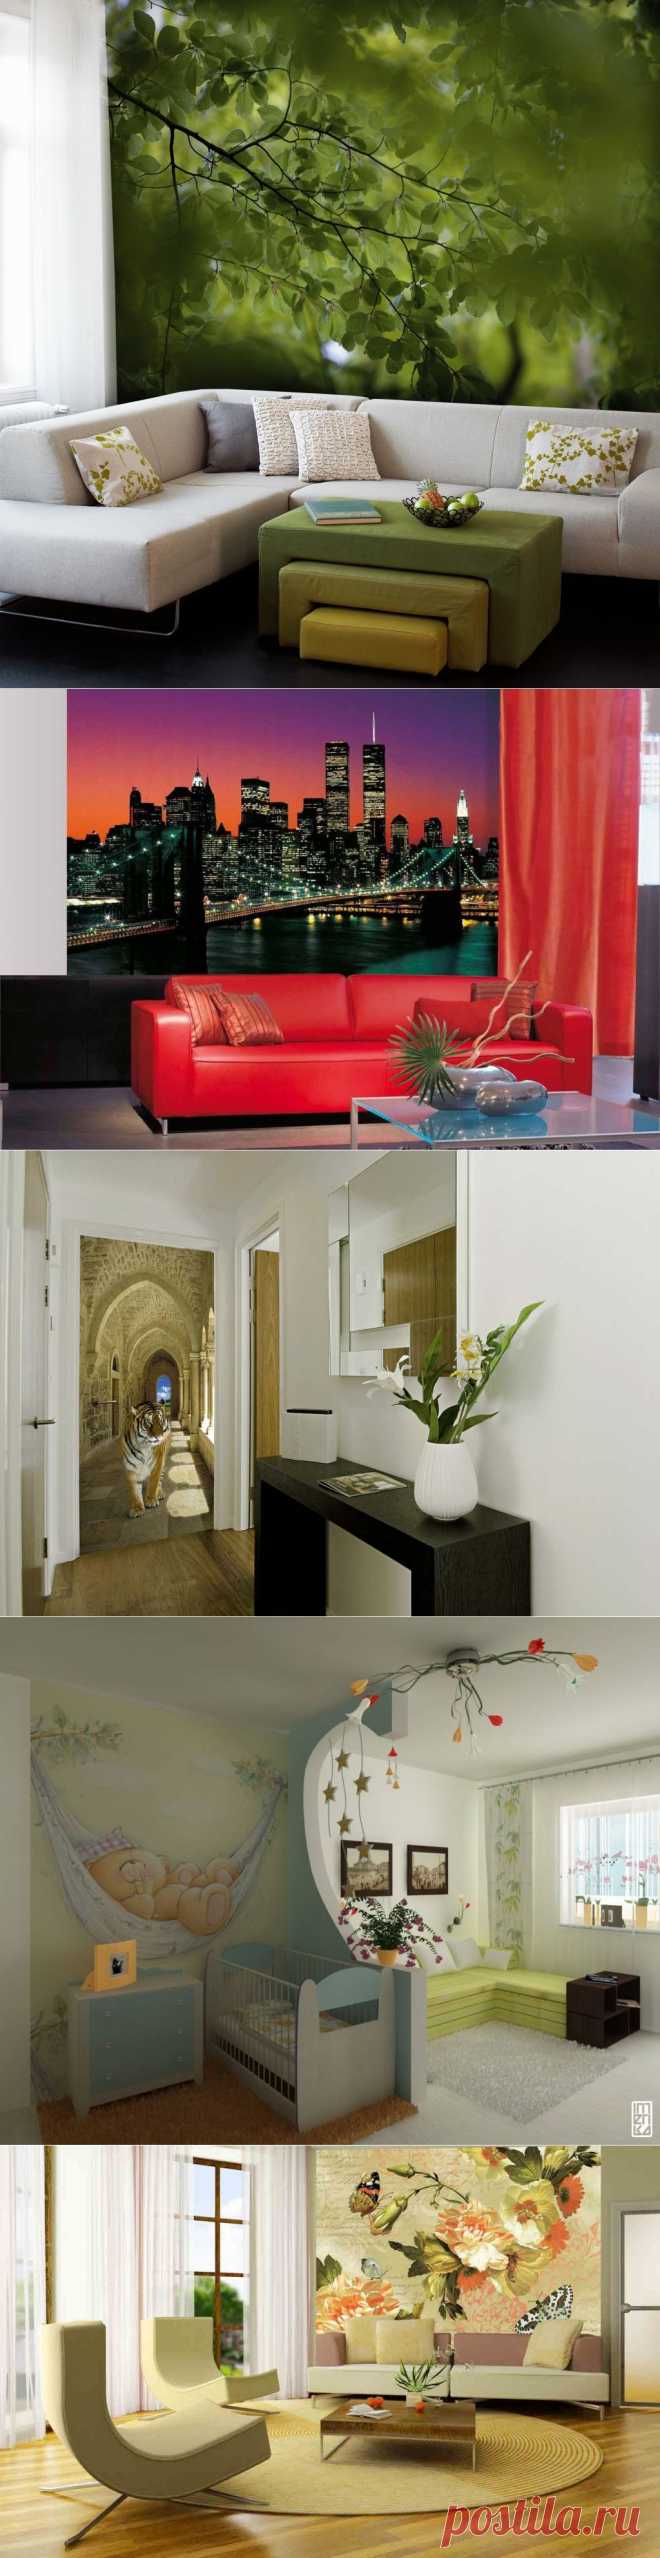 Фотообои в интерьере квартиры, дома, офиса | Newpix.ru - позитивный интернет-журнал